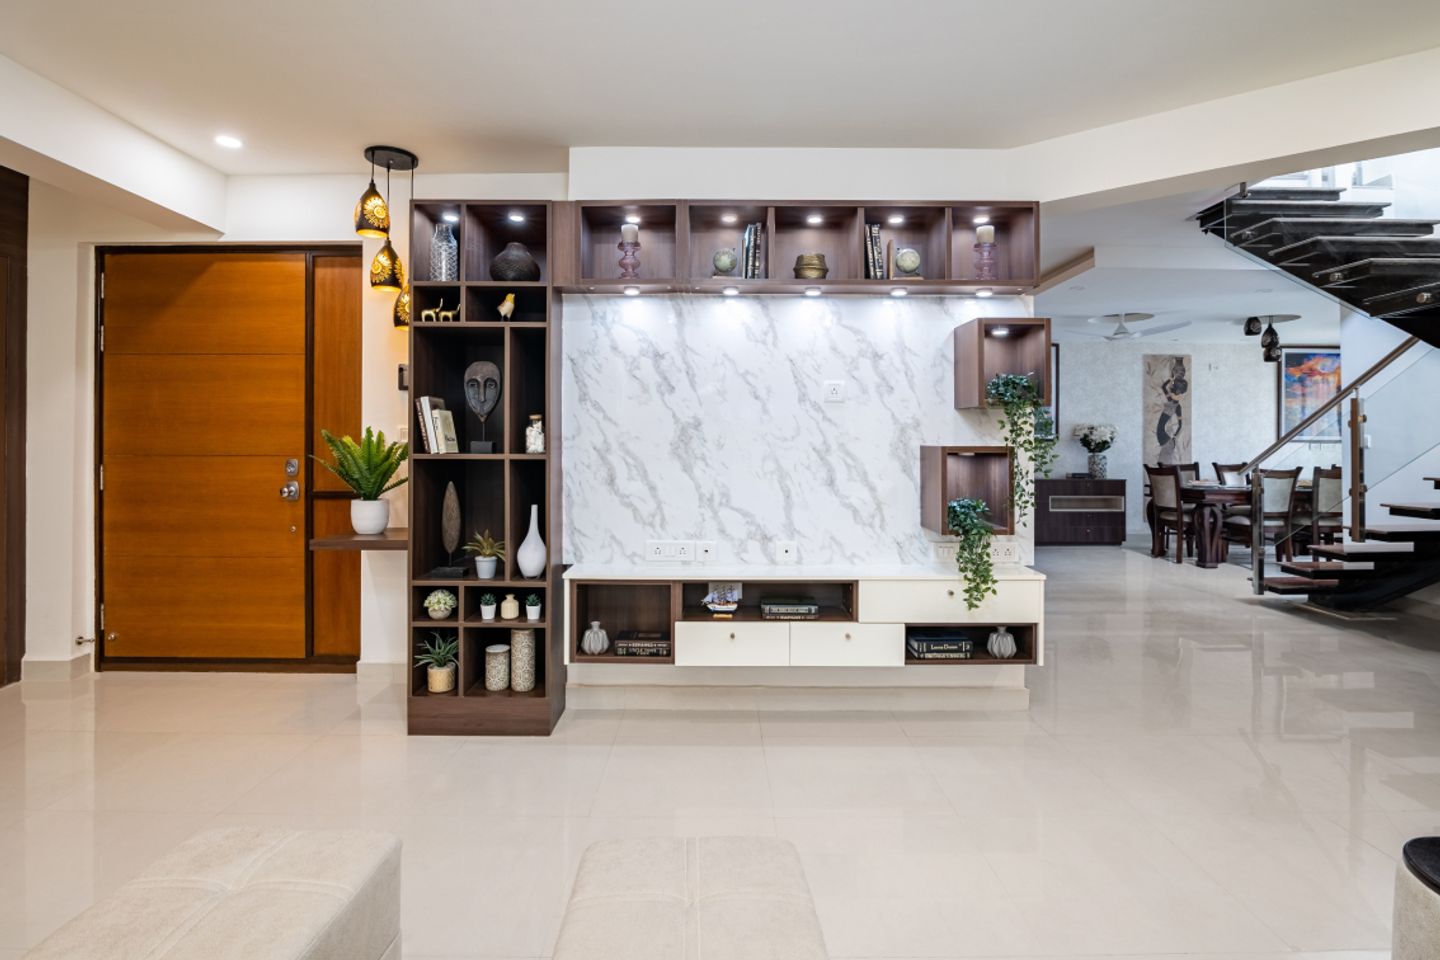 Contemporary Sqaure Ceramic Living Room Tile Design